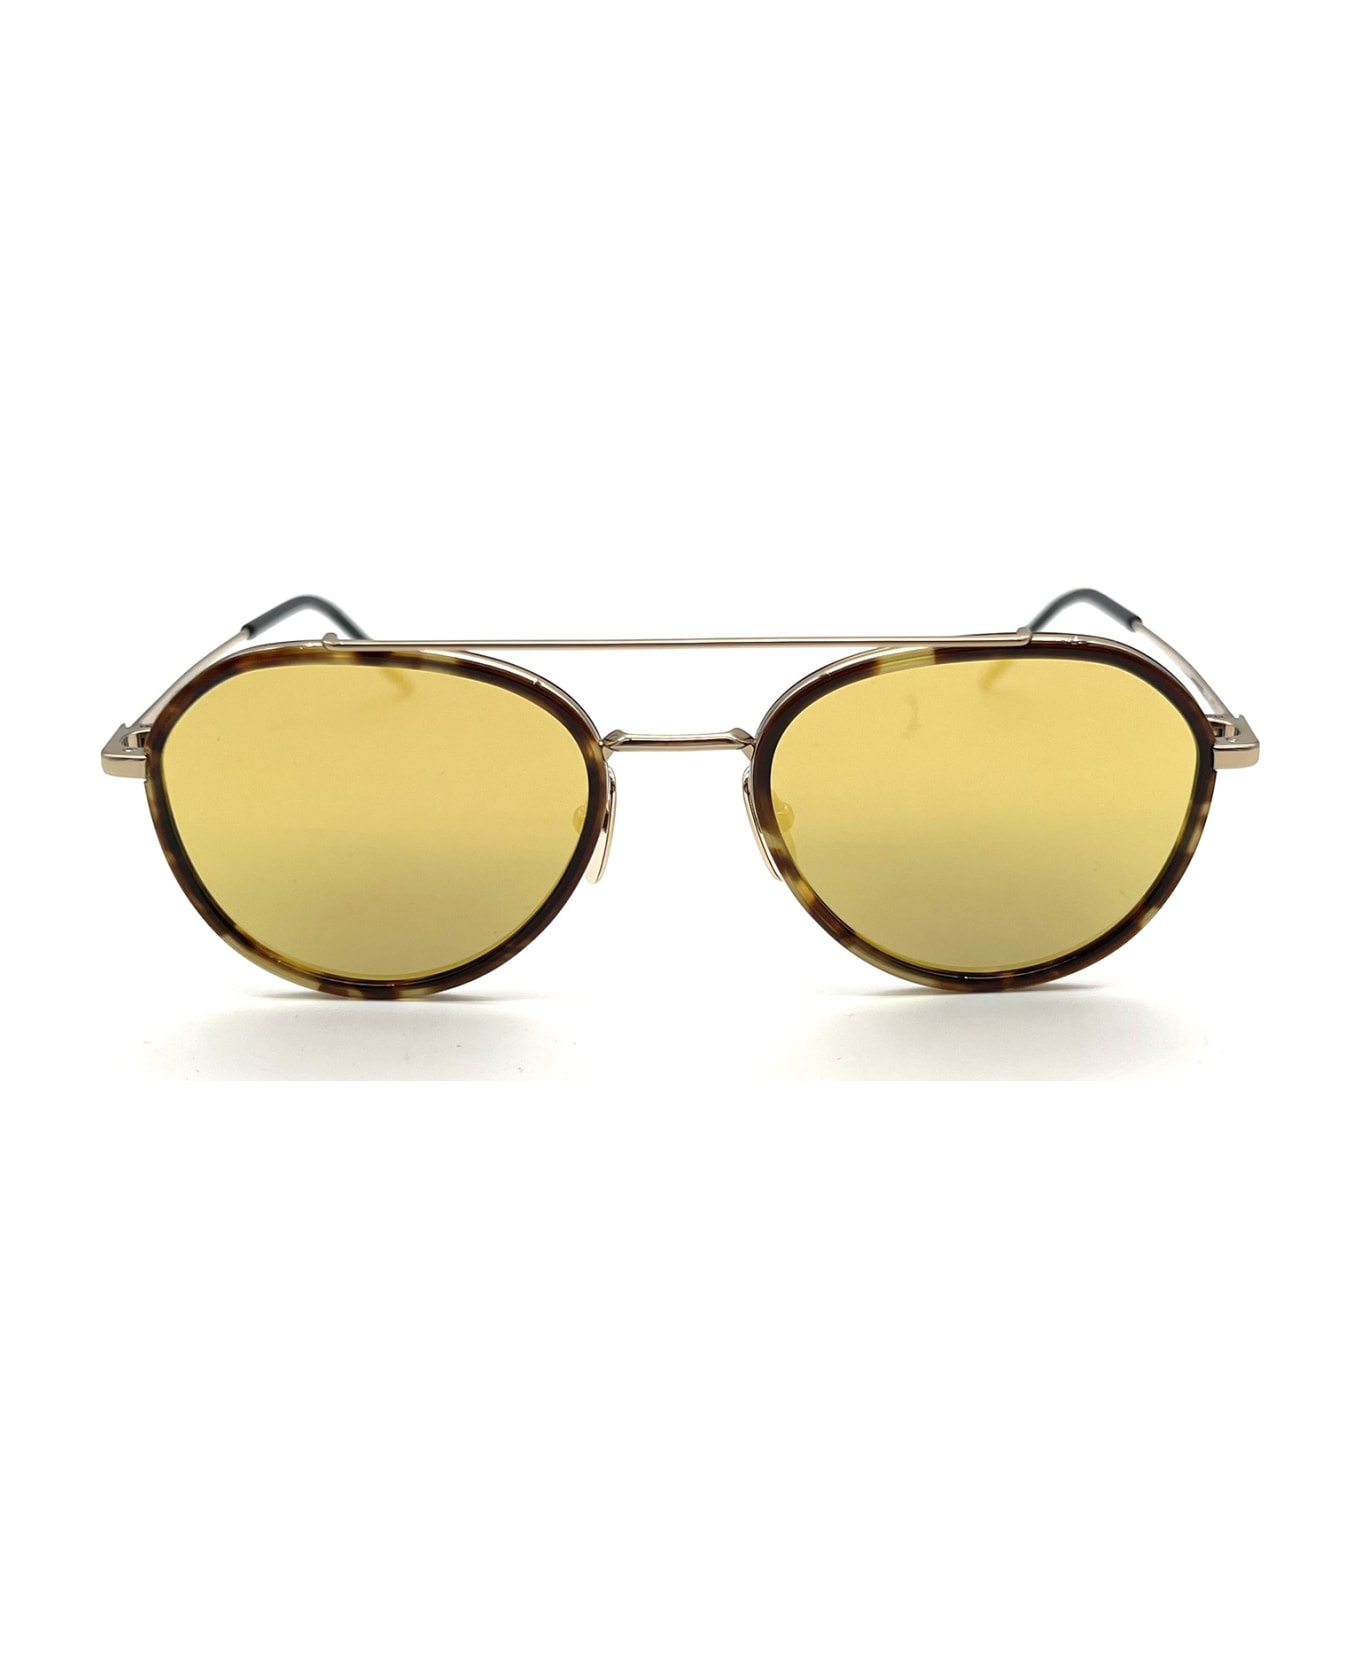 Thom Browne Ues801a/g0003 Sunglasses サングラス